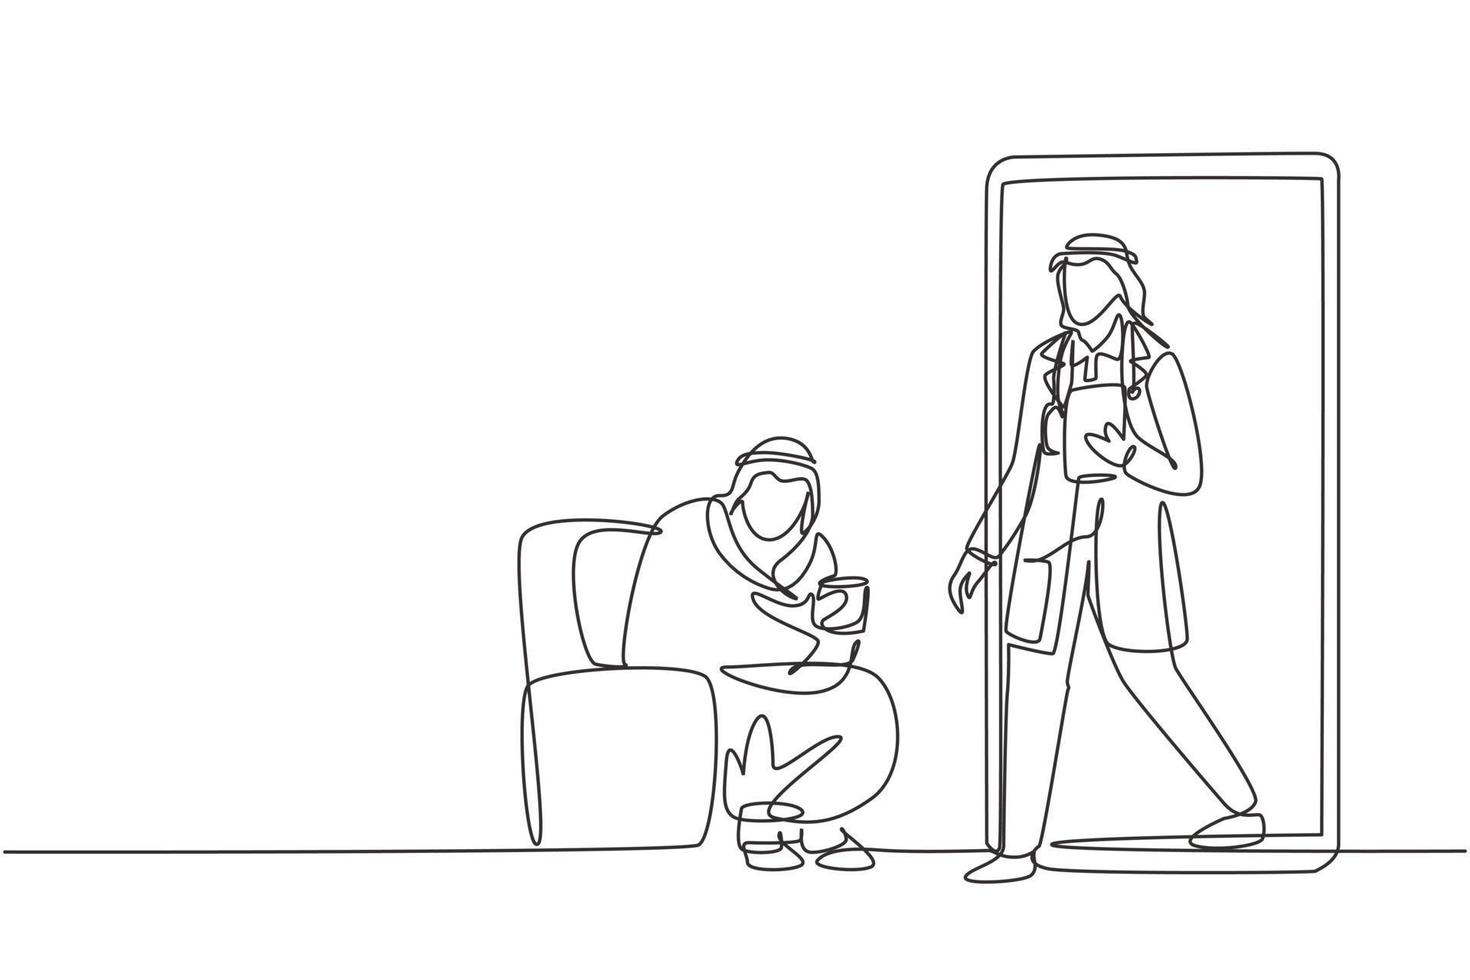 Un solo dibujo de una línea Paciente masculino árabe sentado acurrucado en el sofá, usando una manta, sosteniendo una taza y hay un médico masculino saliendo del teléfono inteligente, sosteniendo el portapapeles. dibujo de línea continua moderna vector